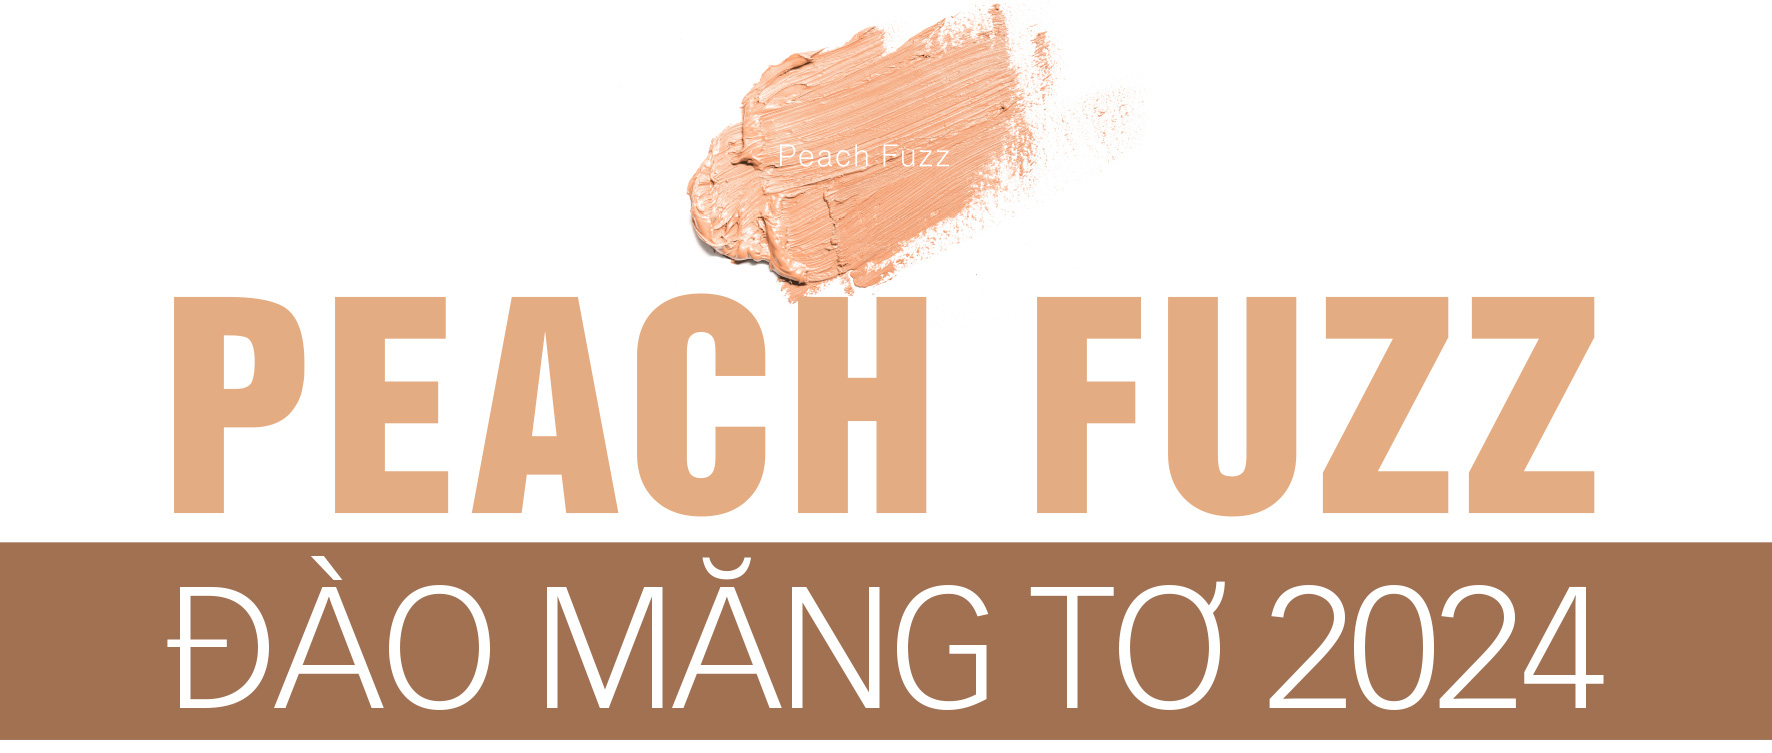 Pantone nghĩ gì khi chọn Peach Fuzz là màu của năm? - Ảnh 1.